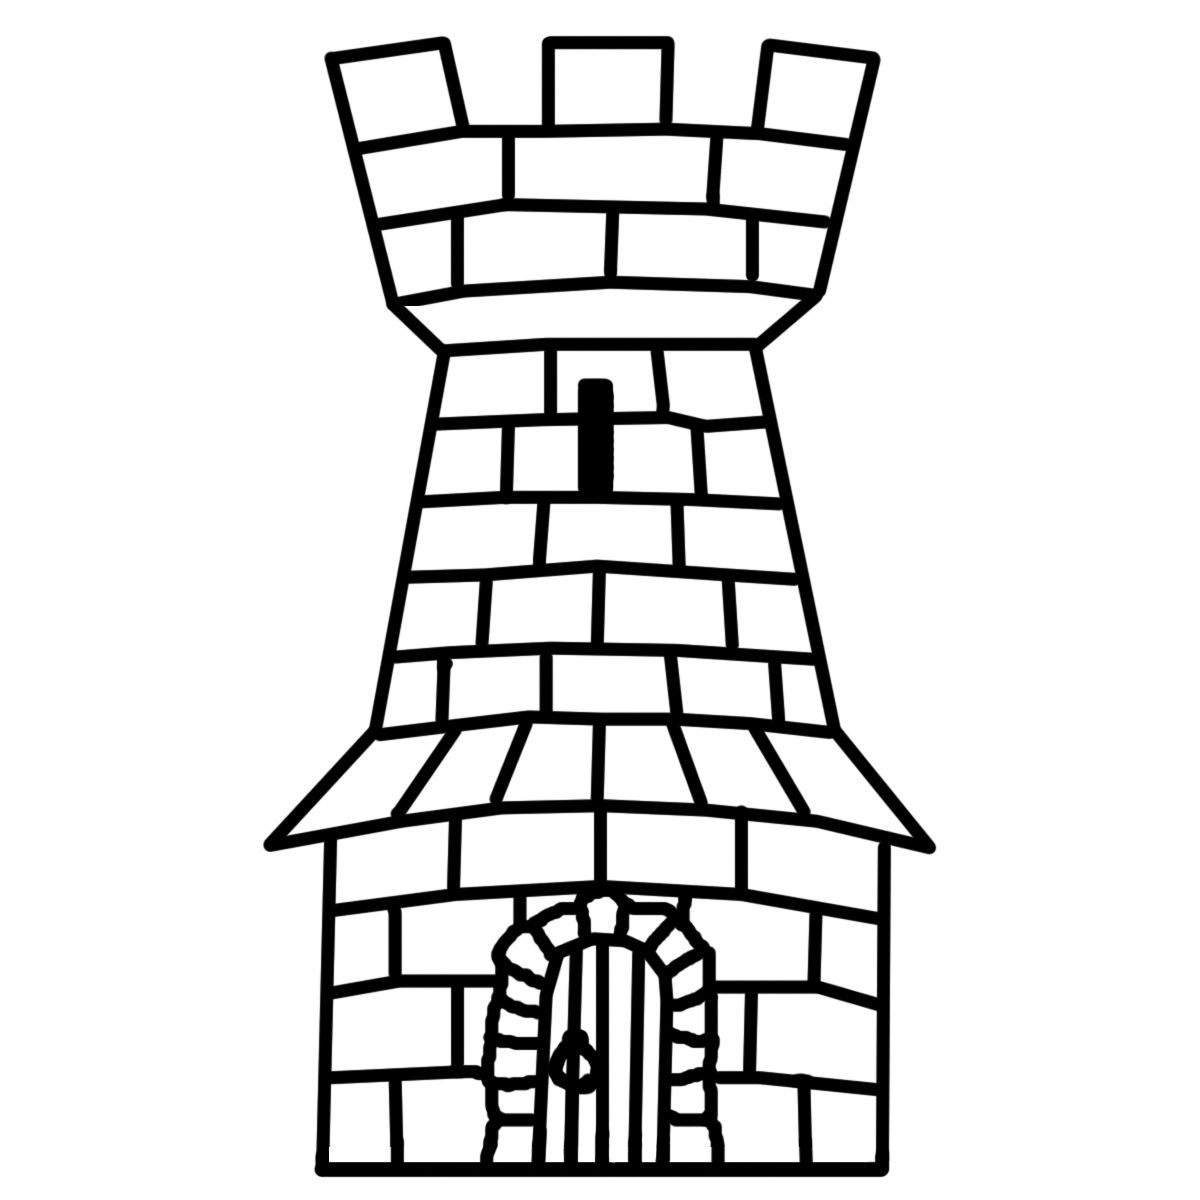 Heraldic towers